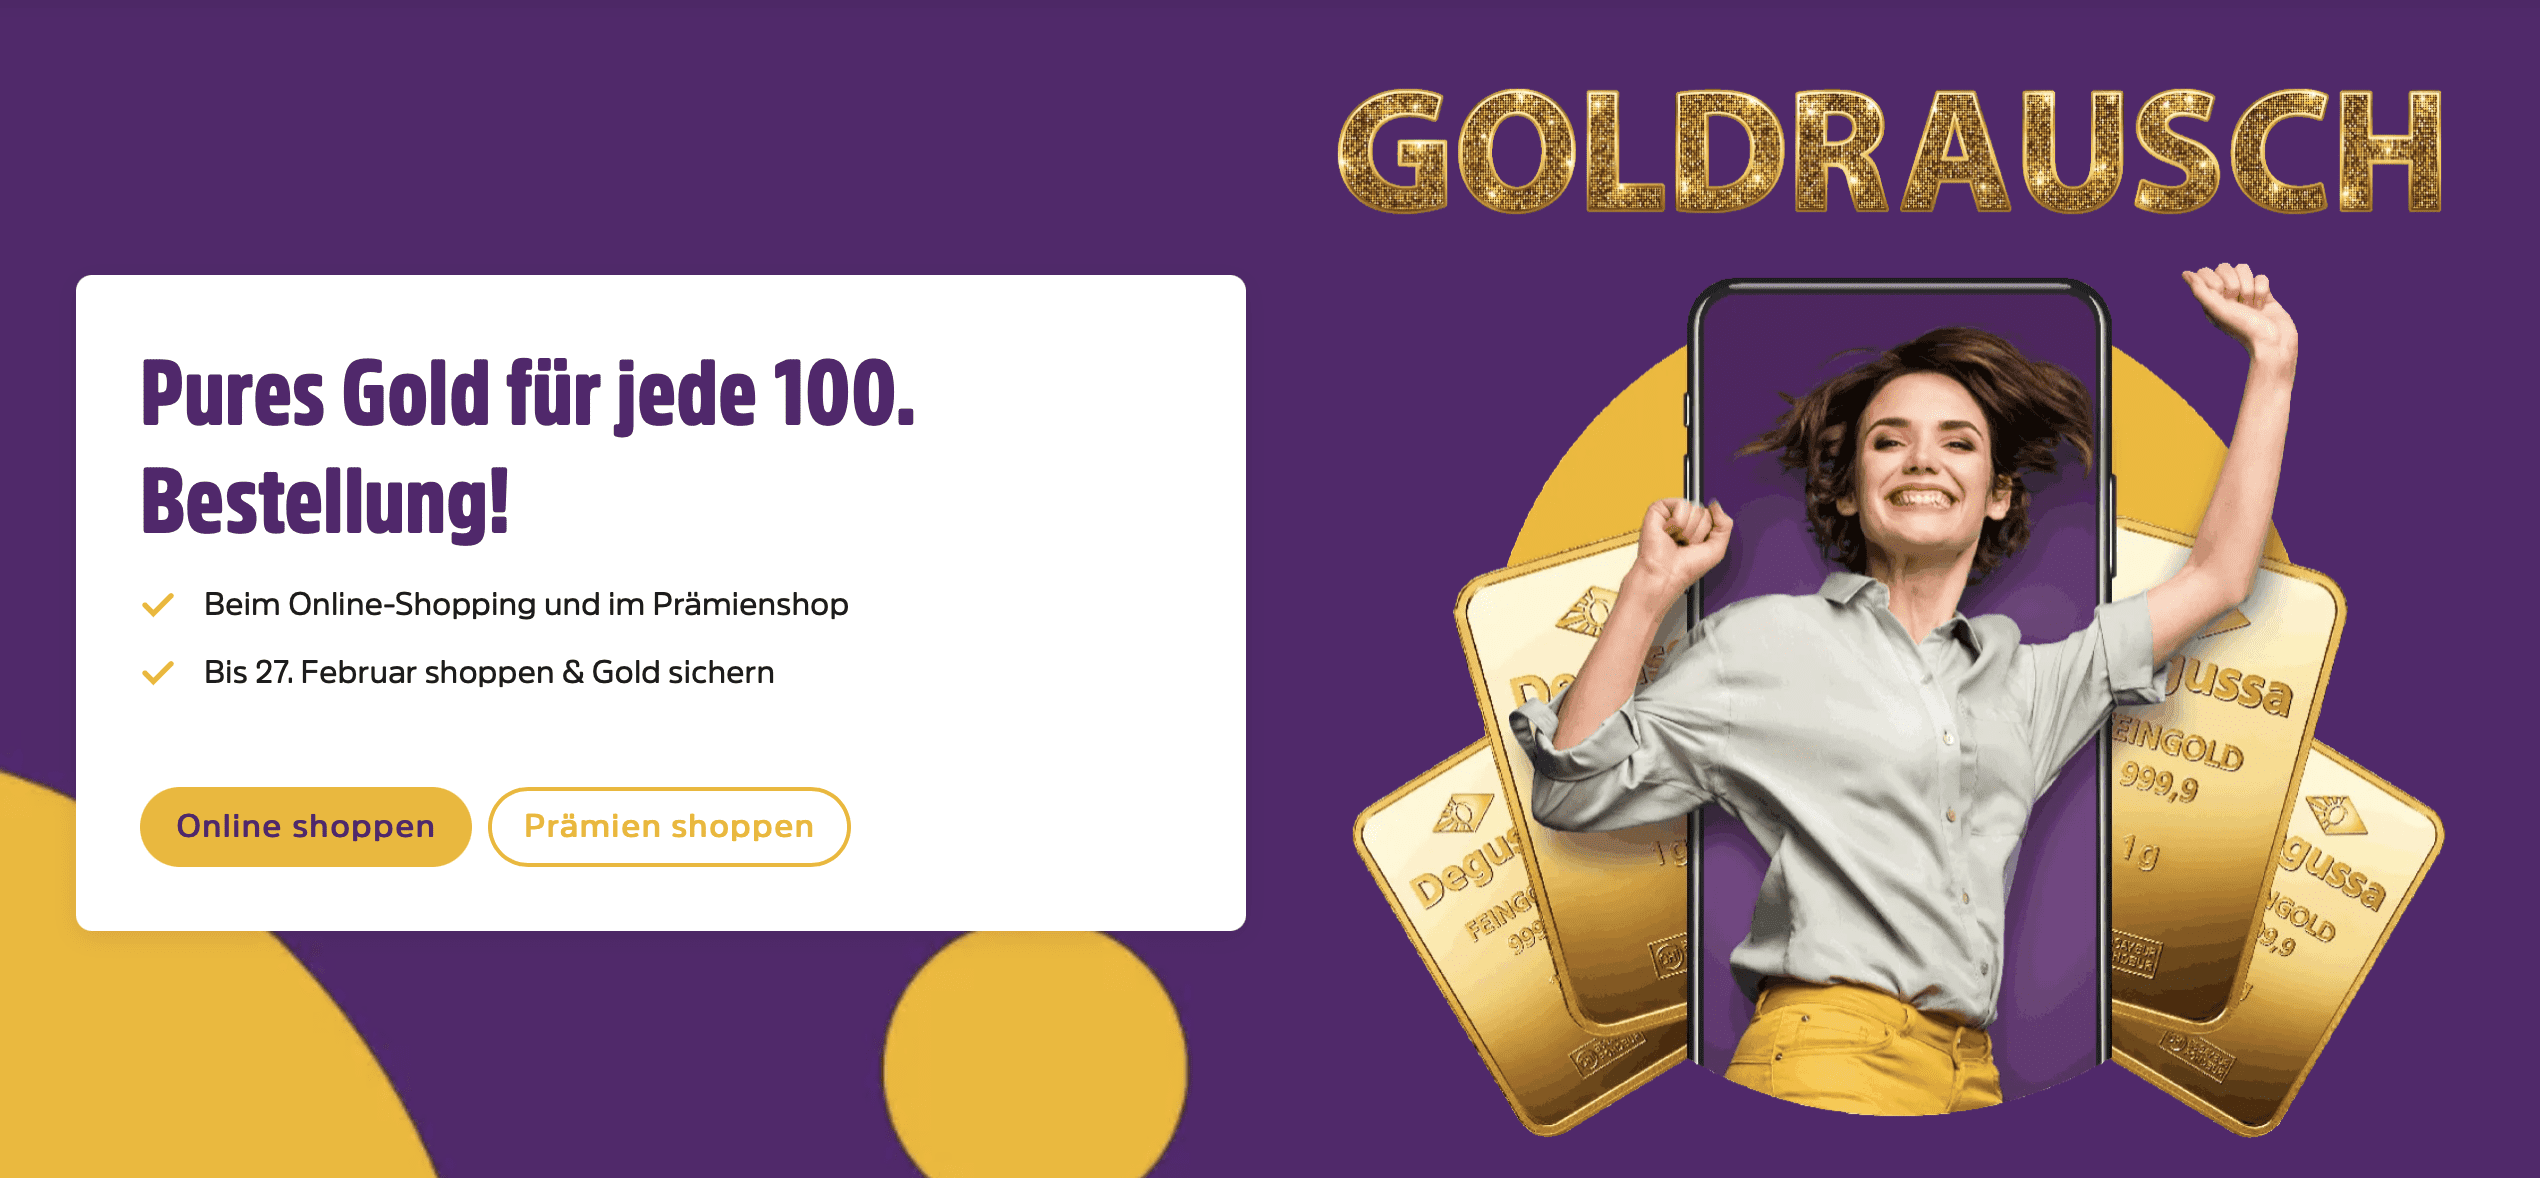 case_DeutschlandCard_„Goldrausc“_ Pures Gold für jede 100. Bestellung!